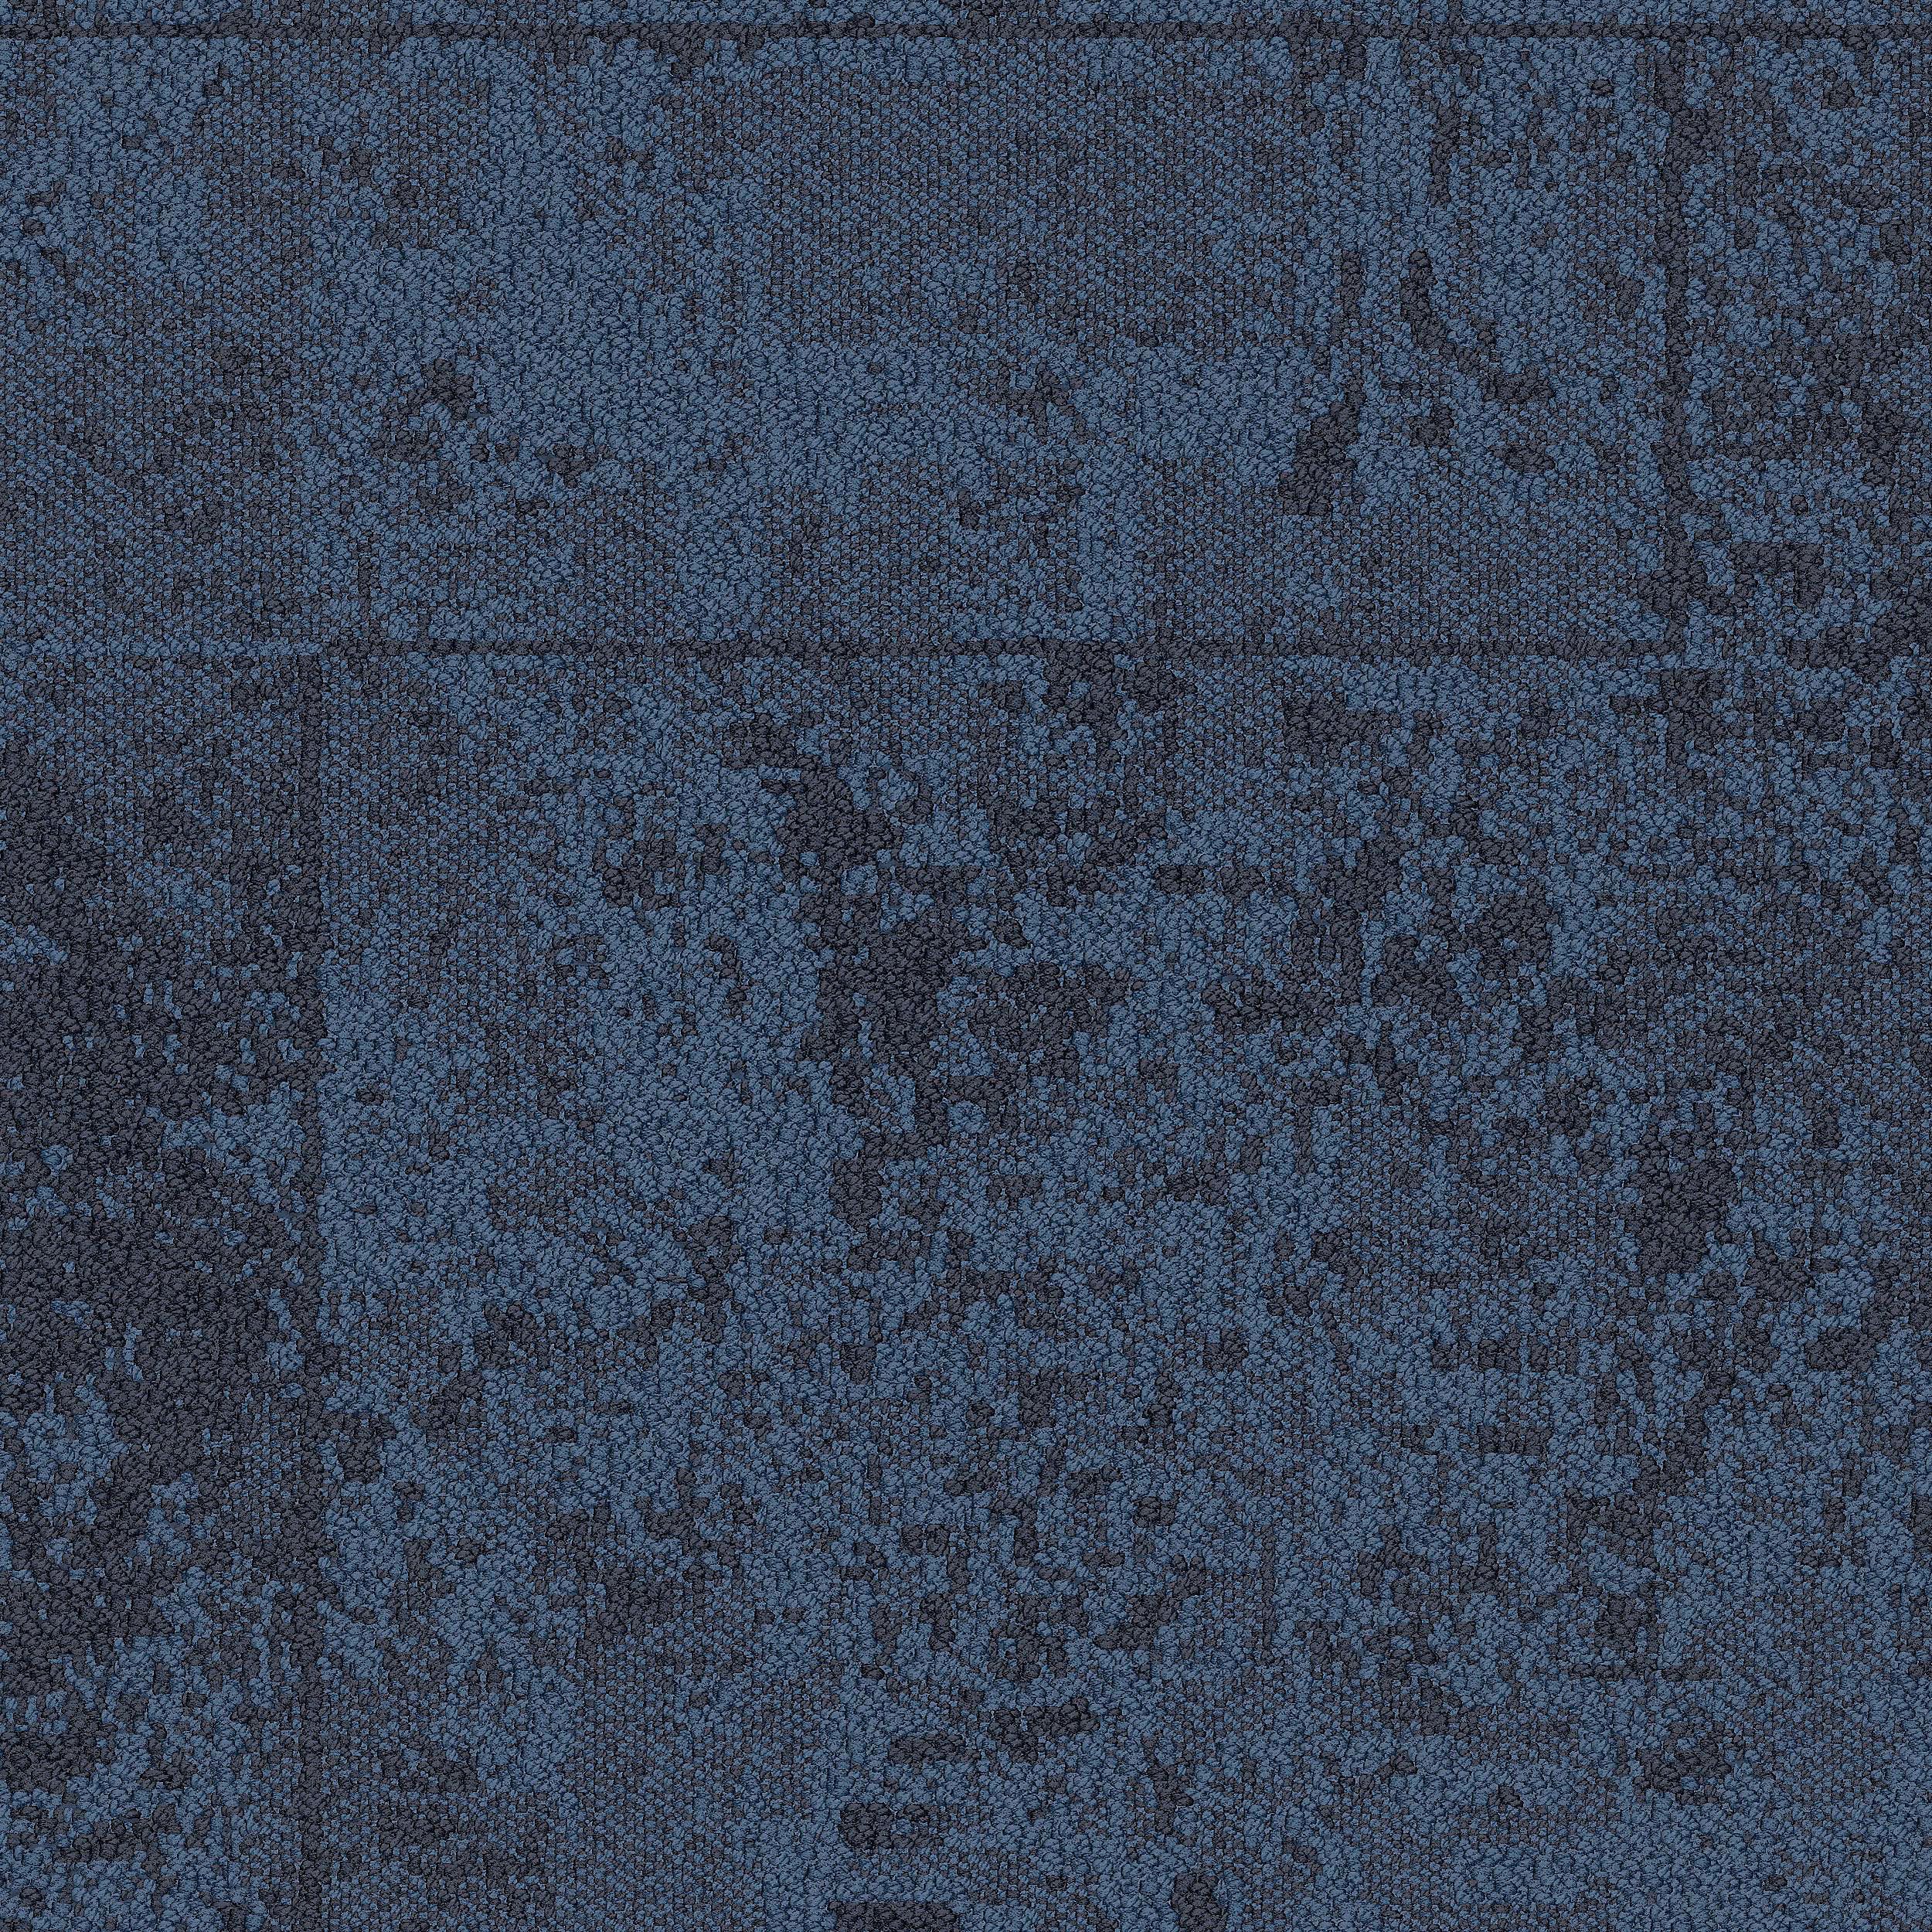 B603 Carpet Tile In Pacific Bildnummer 2